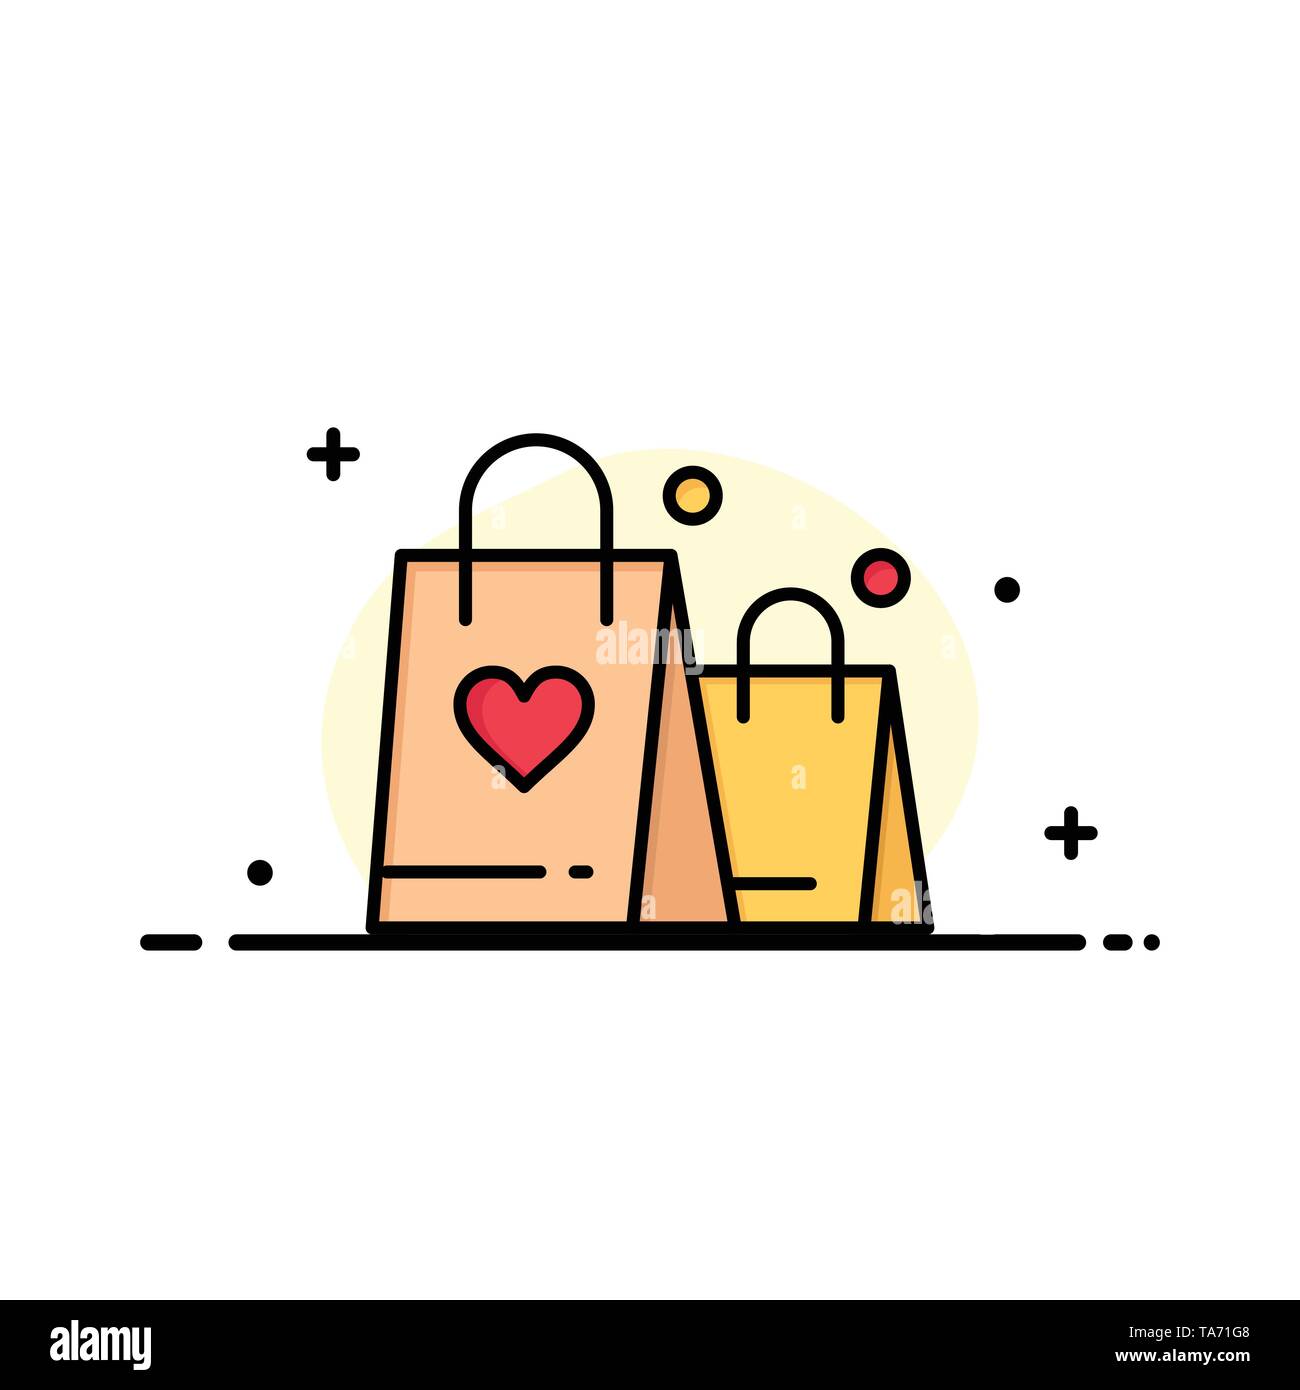 Borsetta, amore, cuore, matrimonio Logo aziendale modello. Schermo piatto a colori Illustrazione Vettoriale